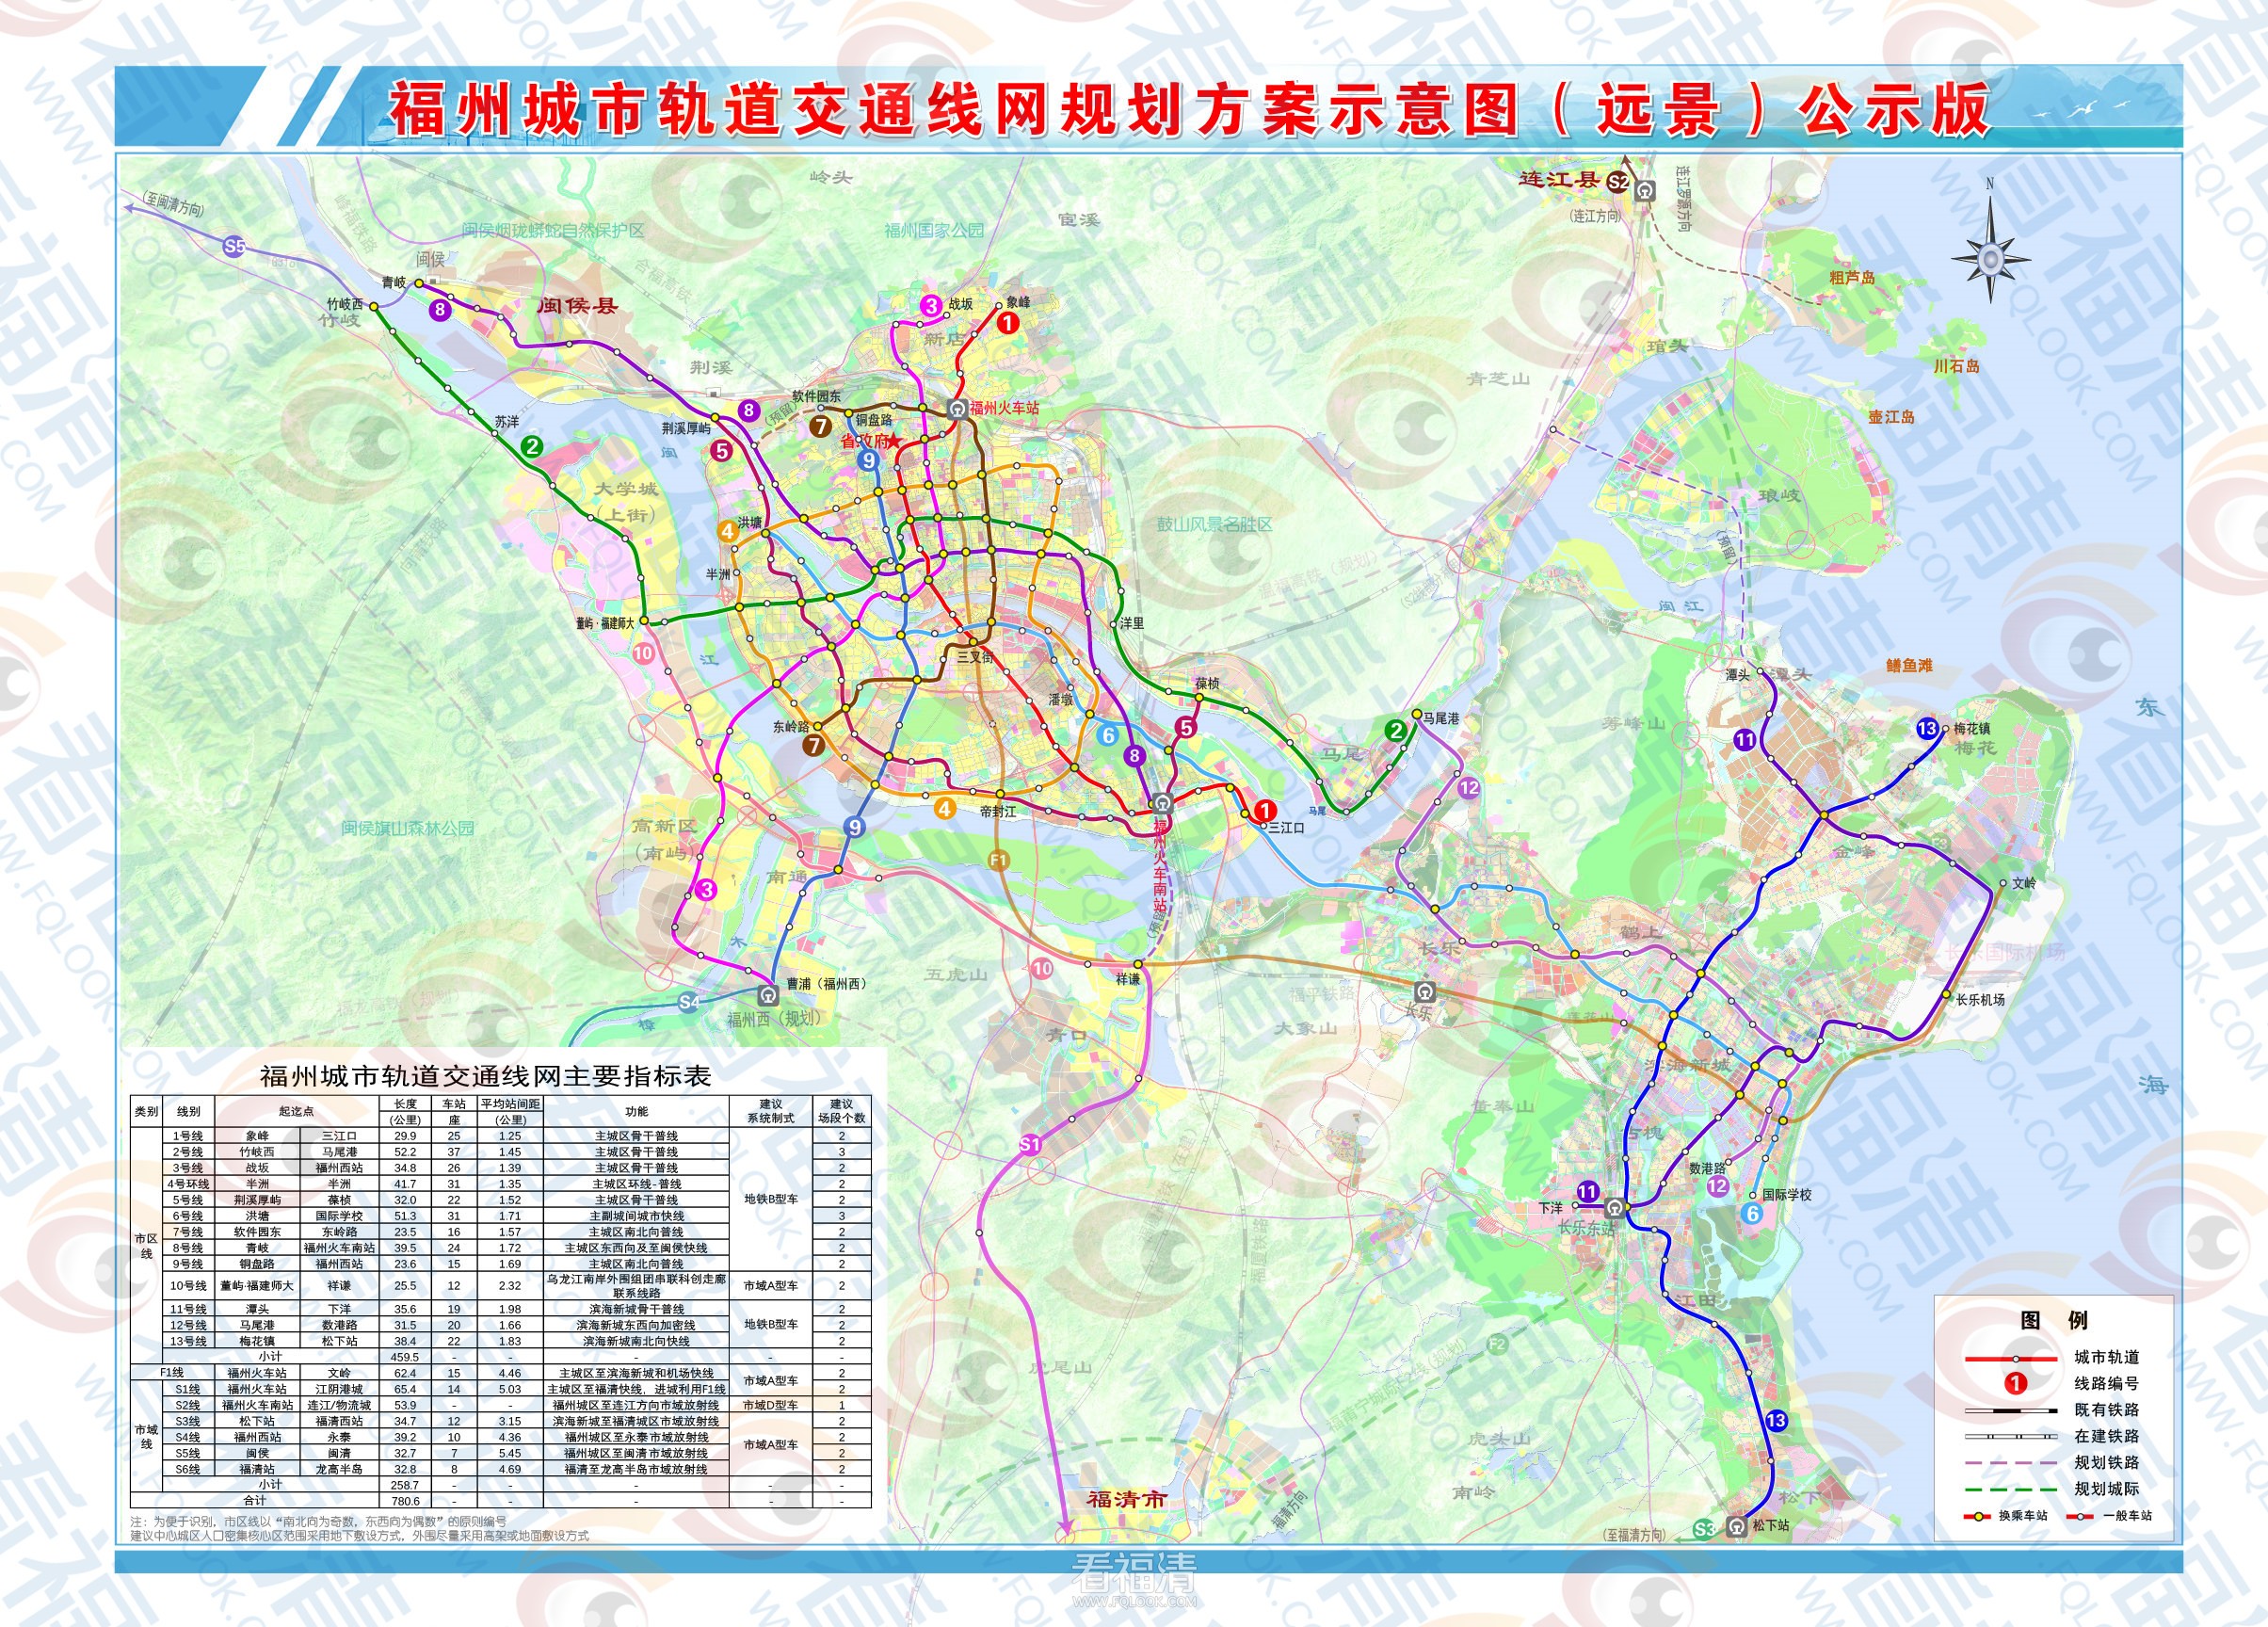 附件2.福州城市轨道交通线网规划方案示意图（远景）公示版.jpg